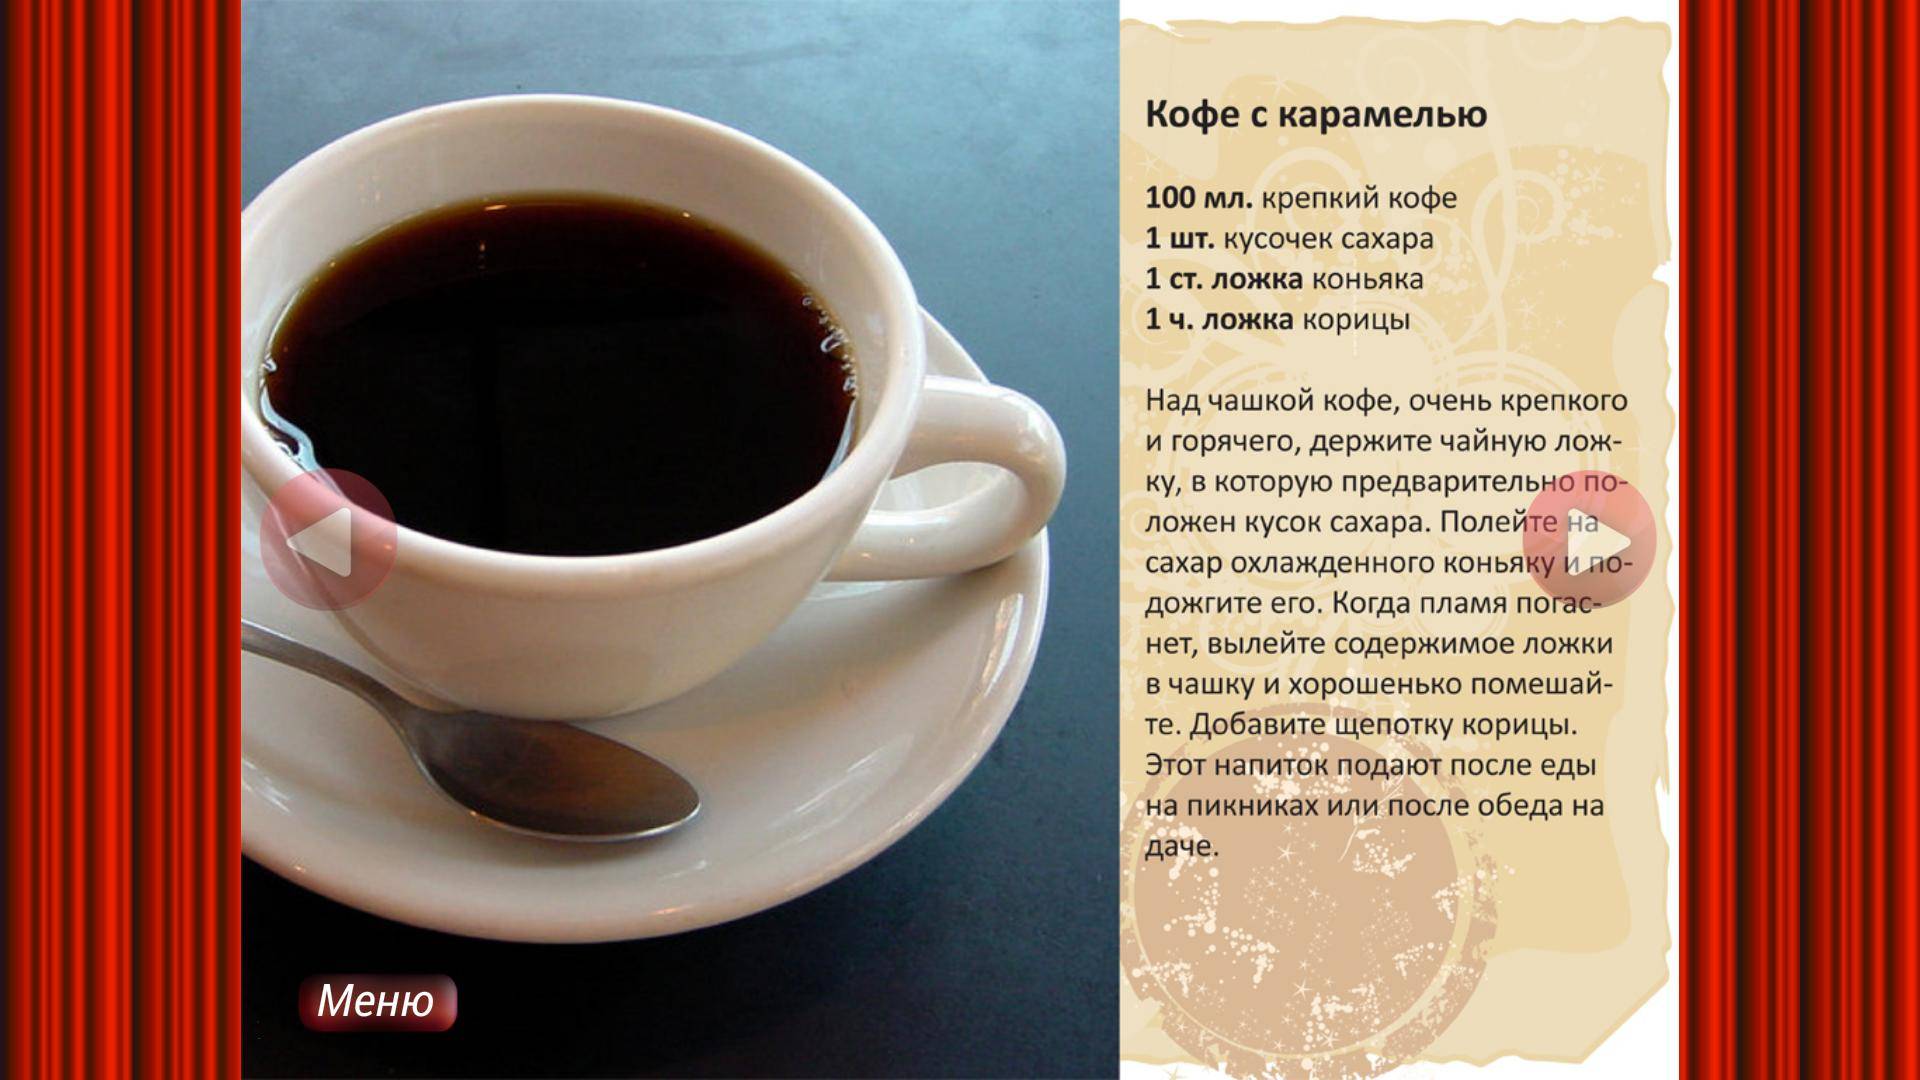 Как варить кофе в турке на плите: открываем секрет идеального вкуса